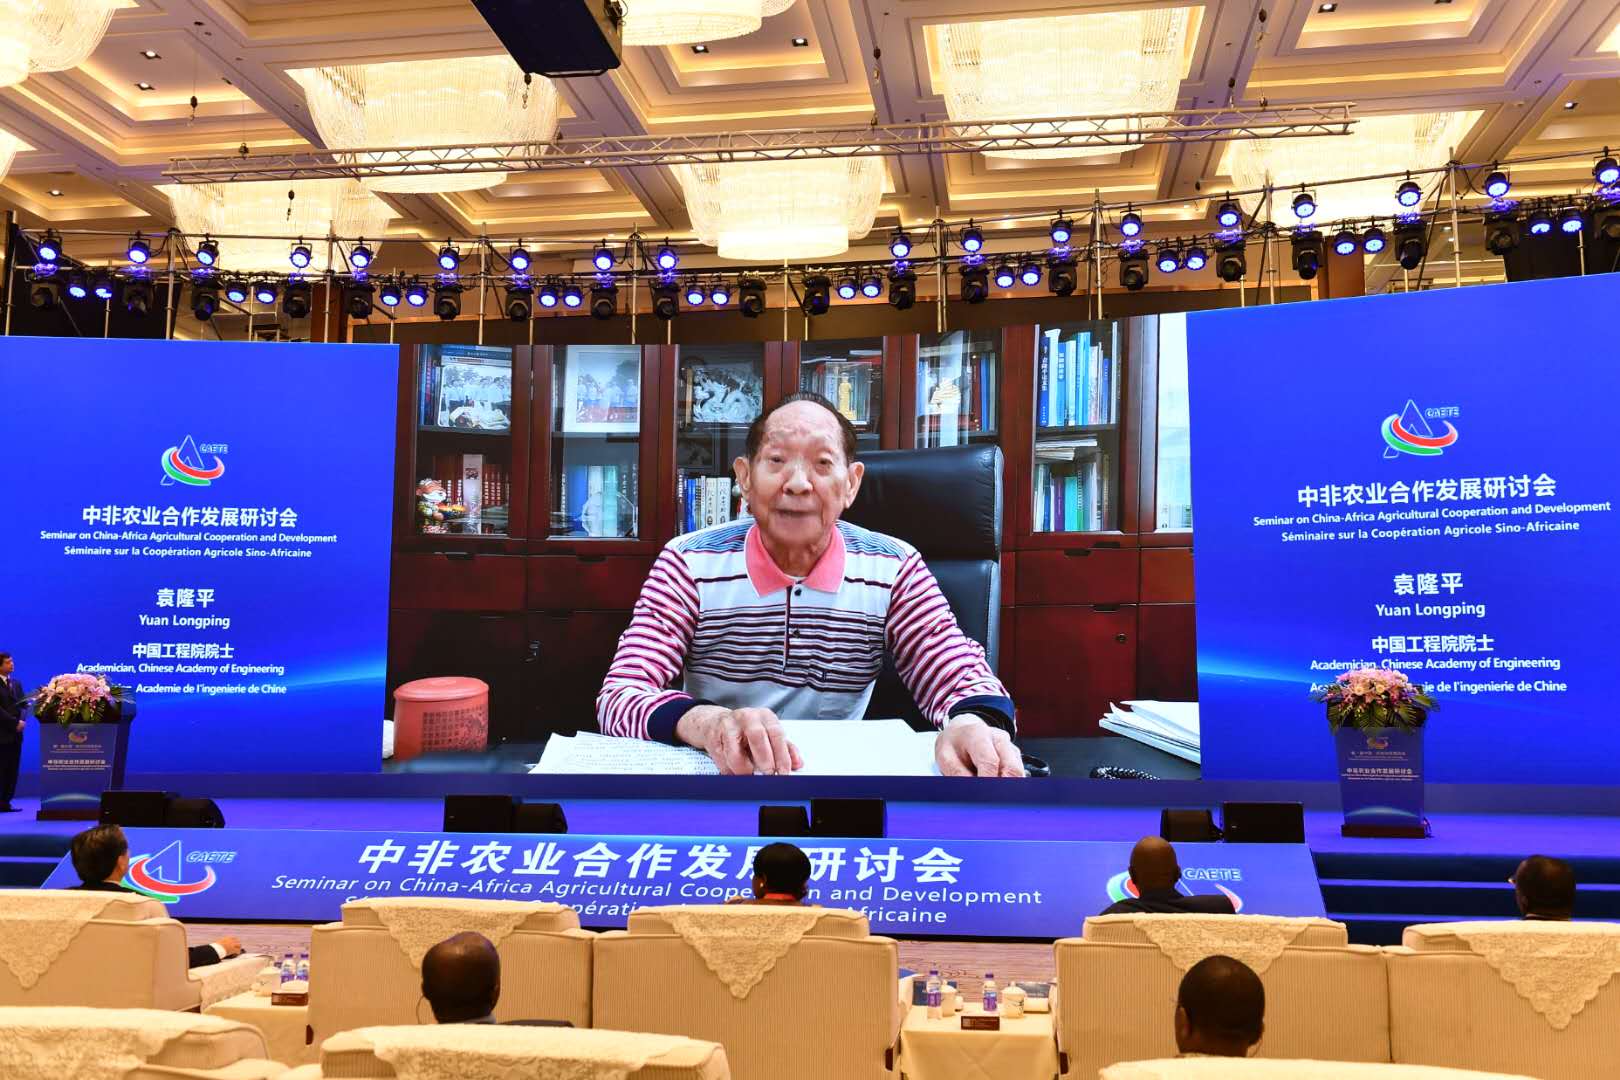 中国工程院院士袁隆平通过视频用英文向研讨会表达祝福和期待。长沙晚报全媒体记者 周柏平 摄 